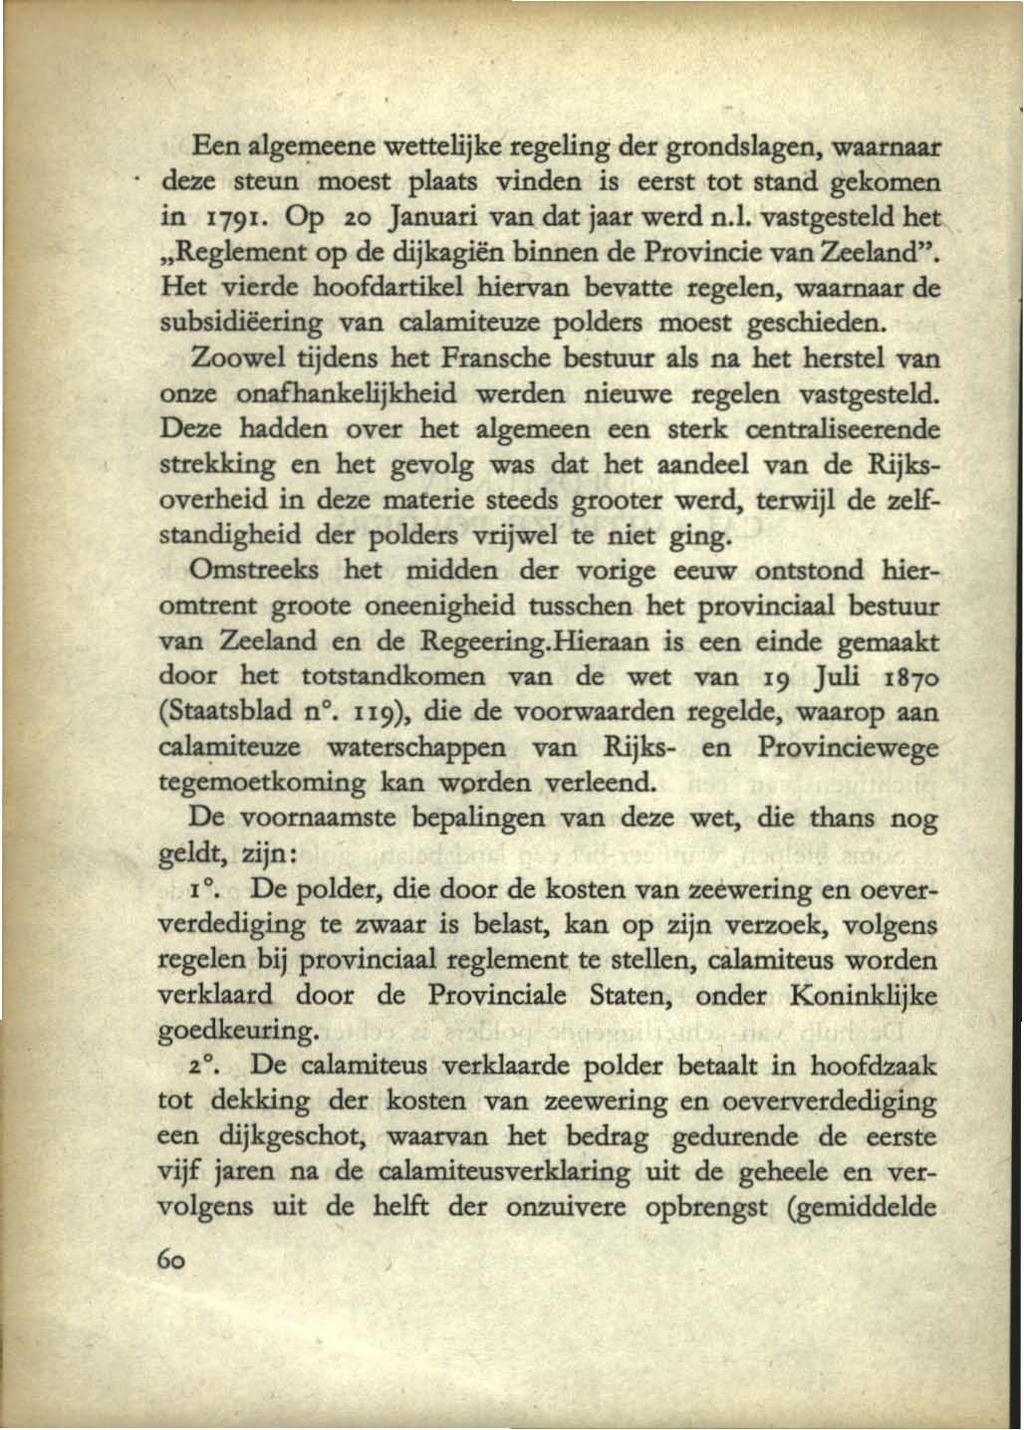 Een alge~eenewettelijke regeling der grondslagen, WlIllttWIr deze steun moest plaats vinden is eerst tot stand gekomen in 1791. Op 20 Januari van dat jaar werd n.l. vastgesteld het "Reglement op de dijkagiën binnen de Provincie van Zeeland".